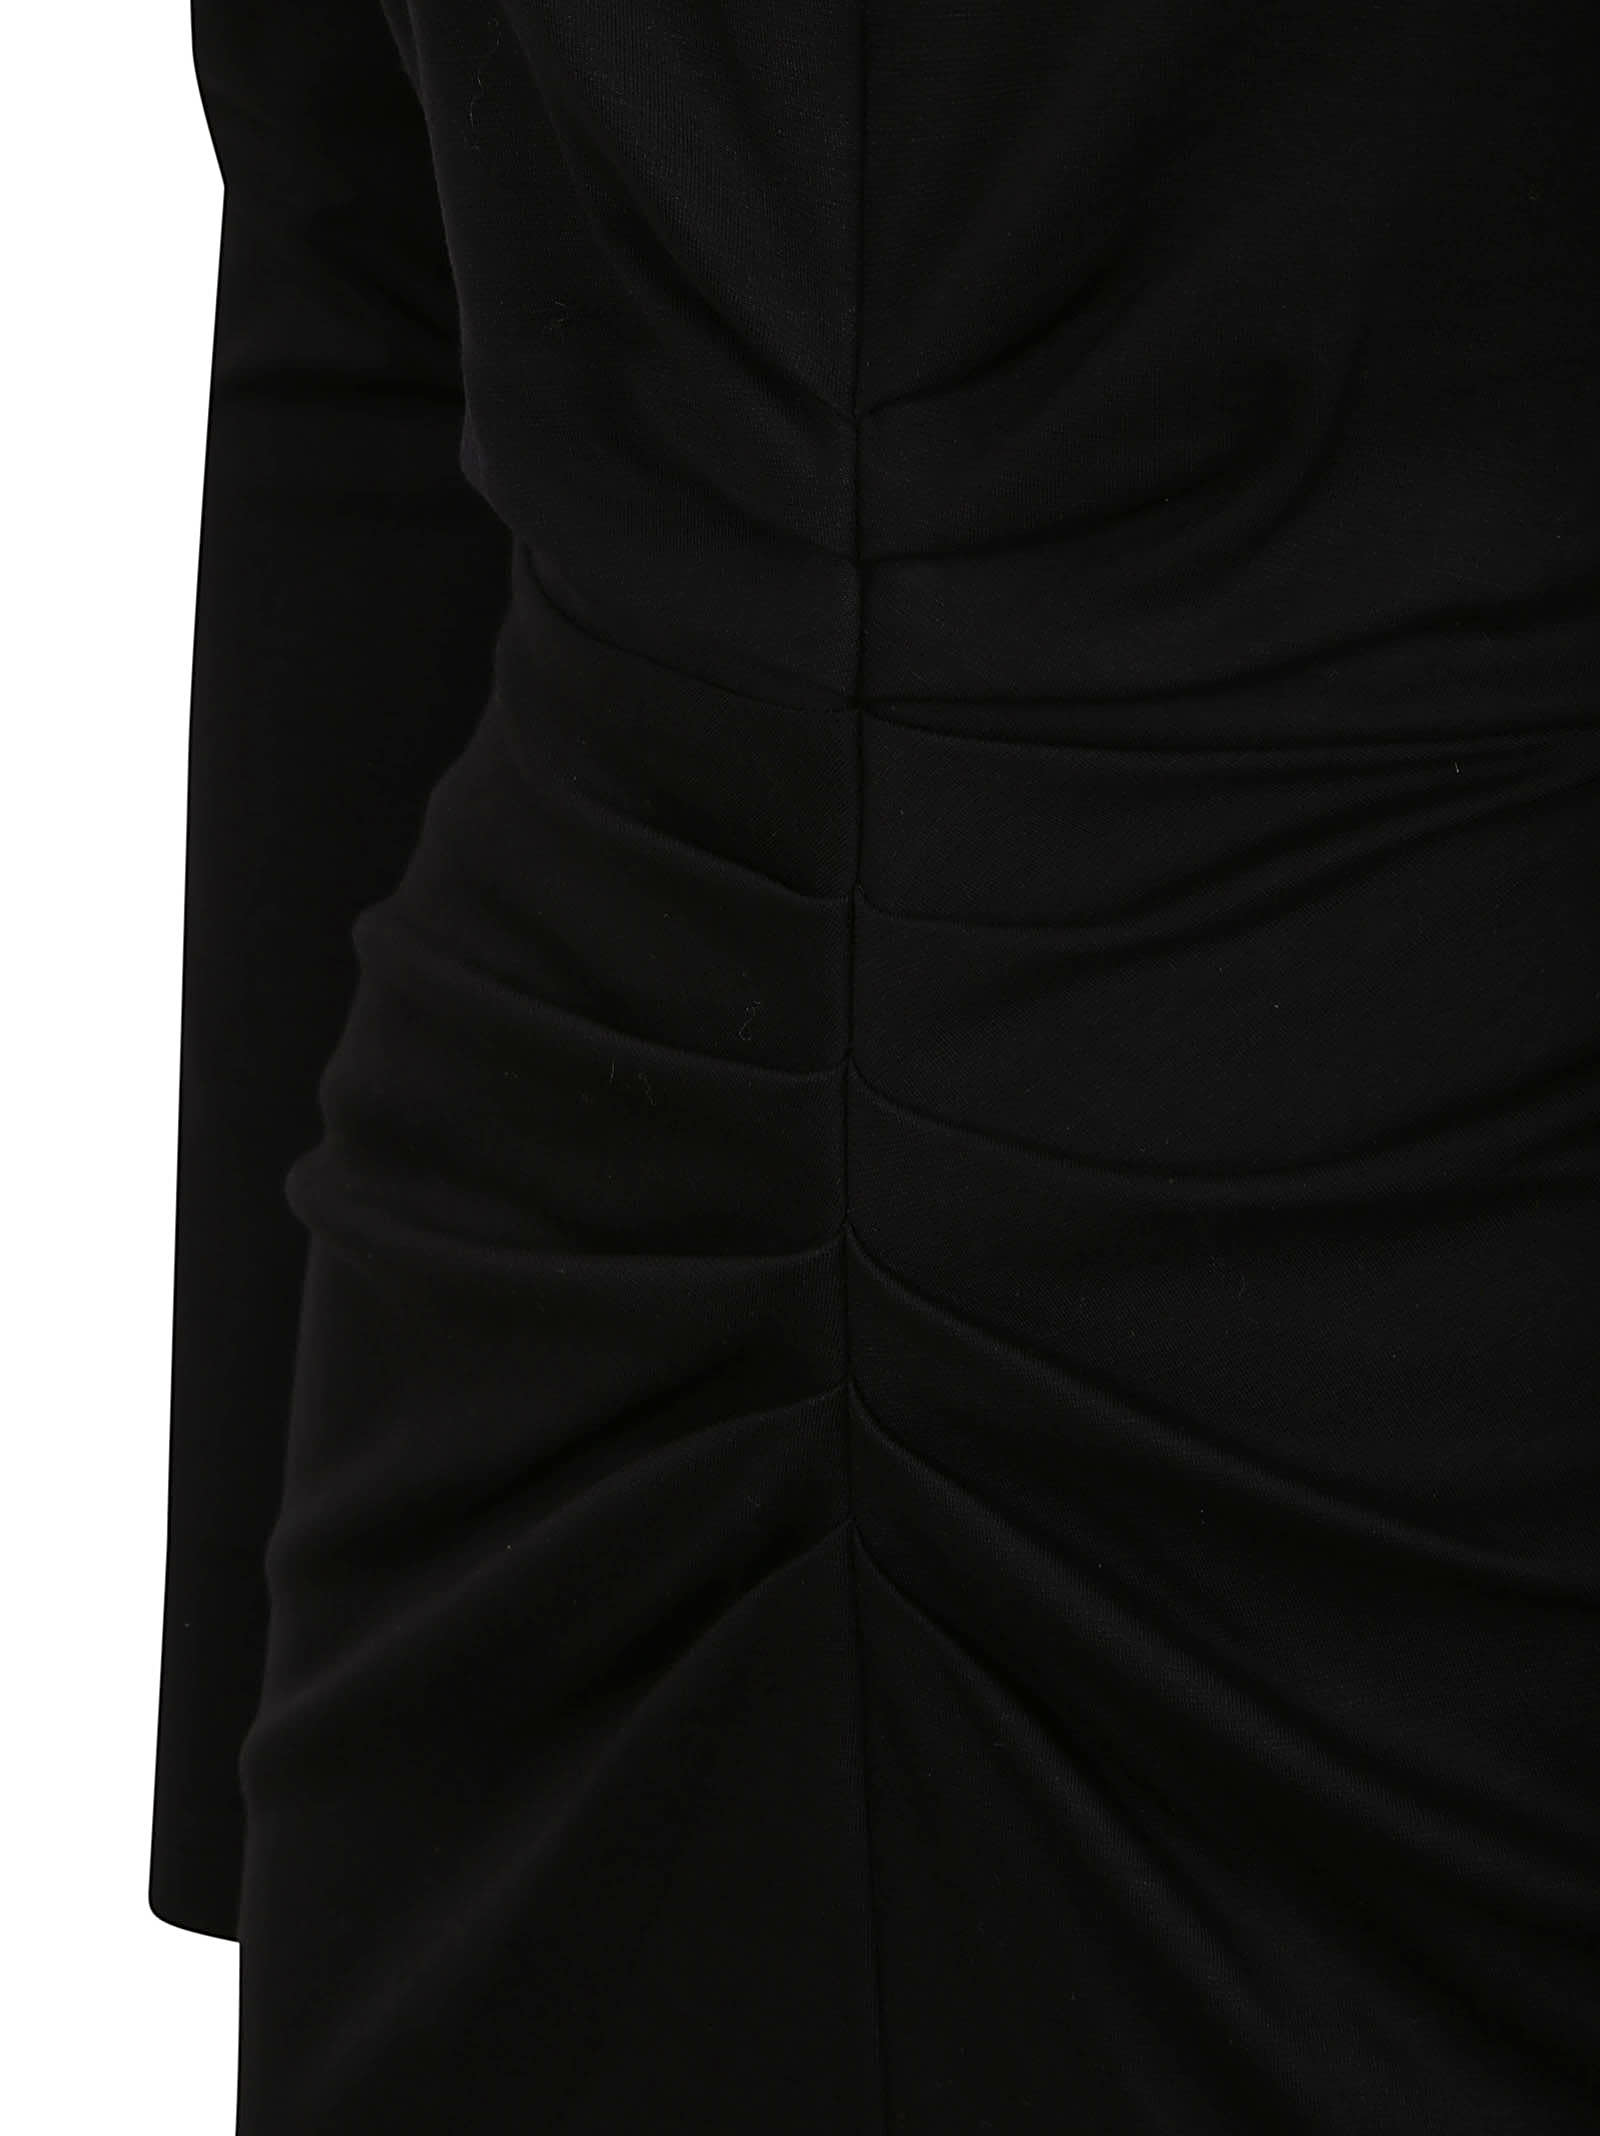 Shop Diane Von Furstenberg Dresses Black